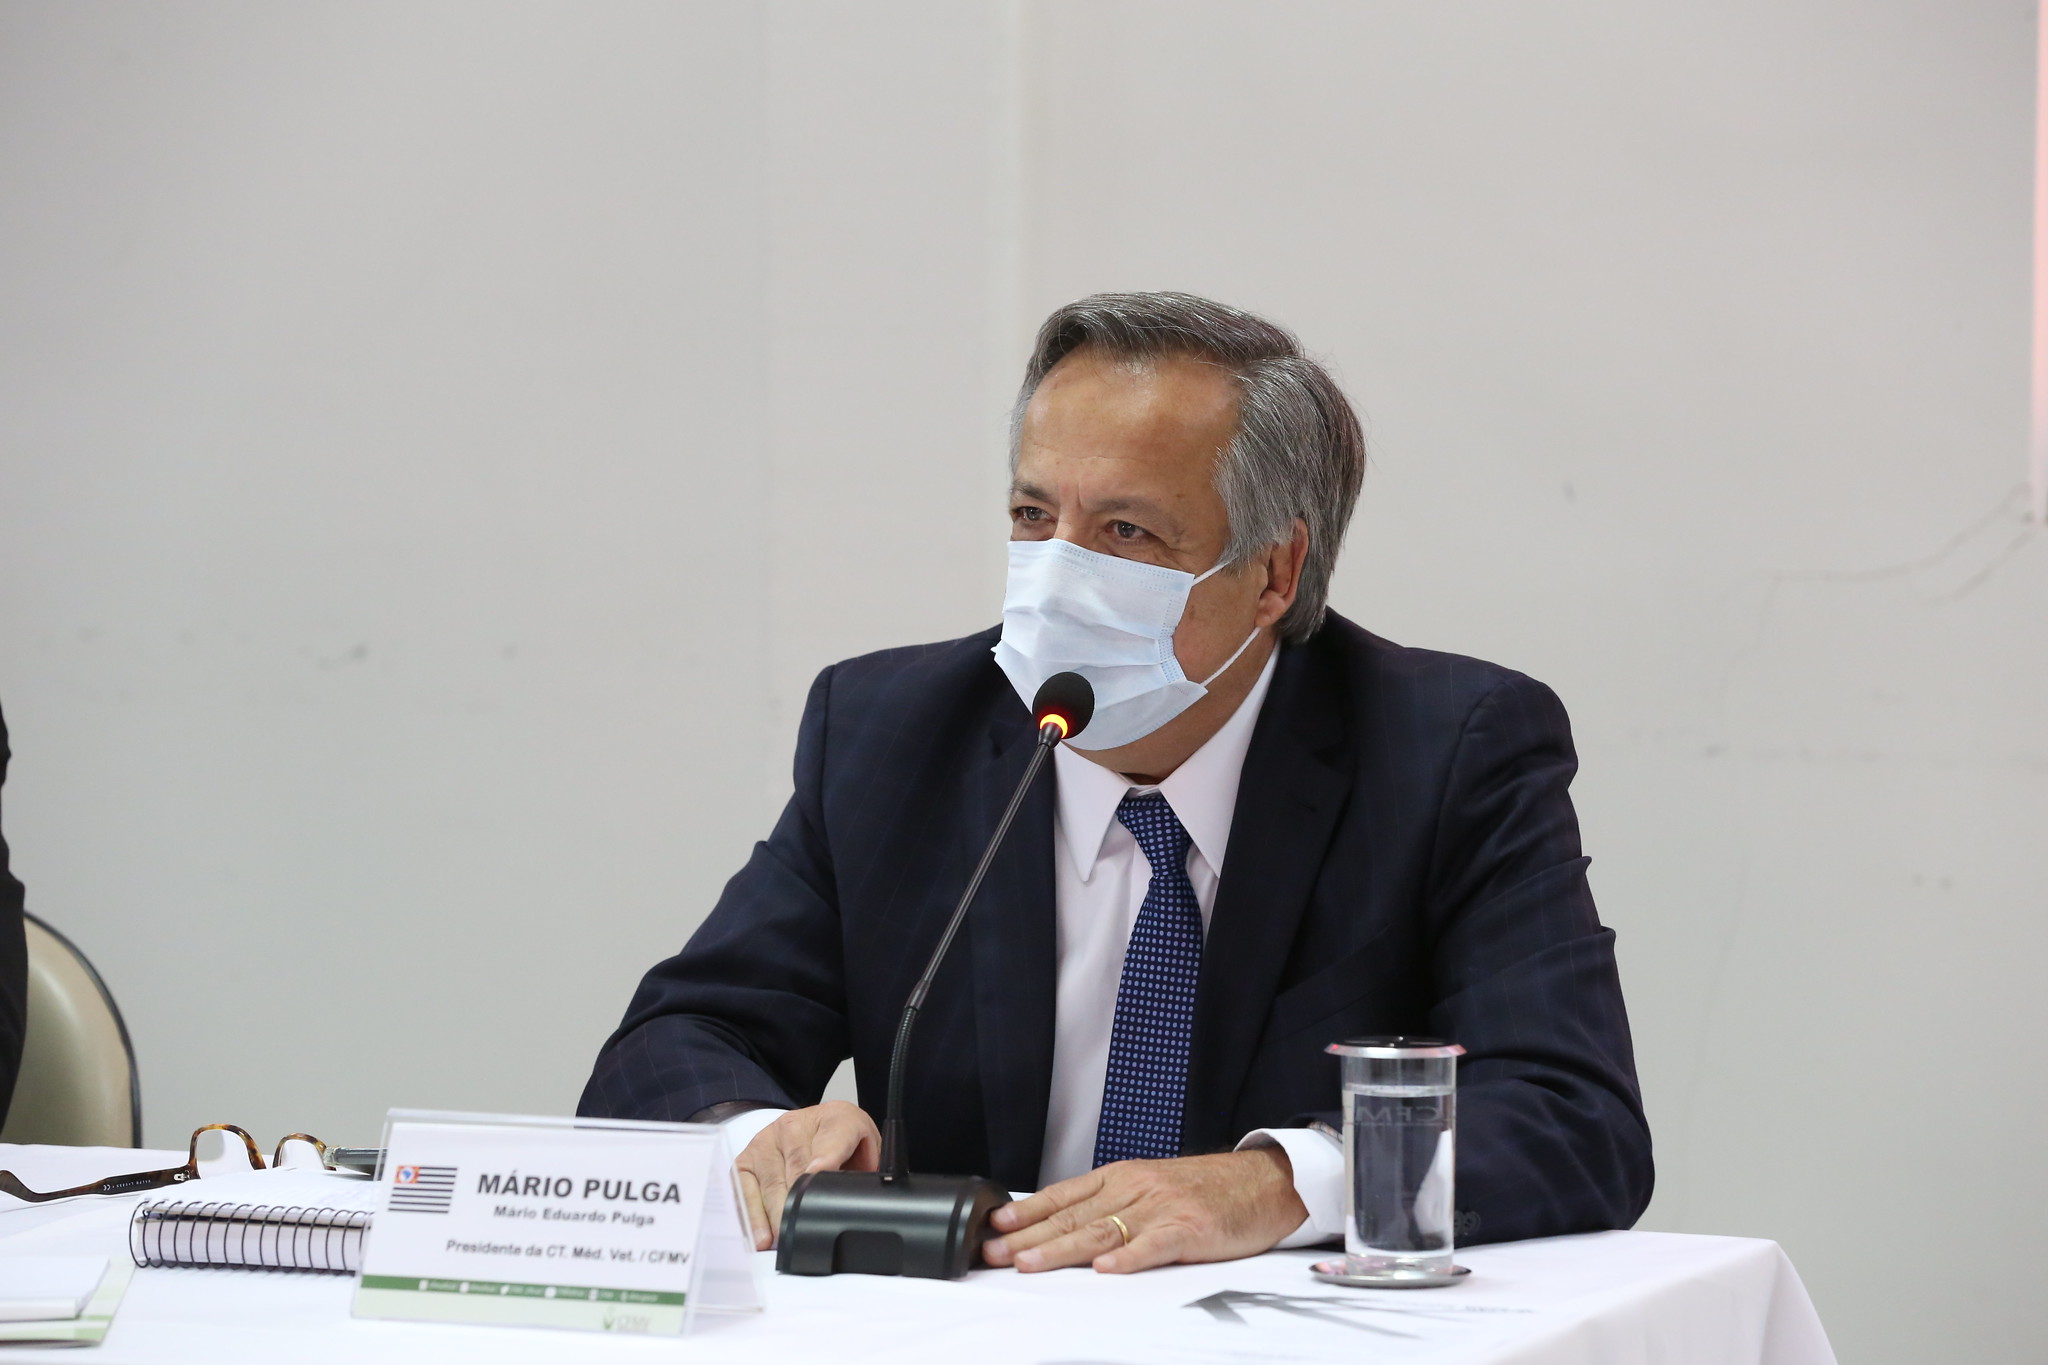 Mário Eduardo Pulga, de máscara, discursa sentado atrás de uma mesa em que estão placa com seu nome, microfone, e copo com água sob uma toalha branca.